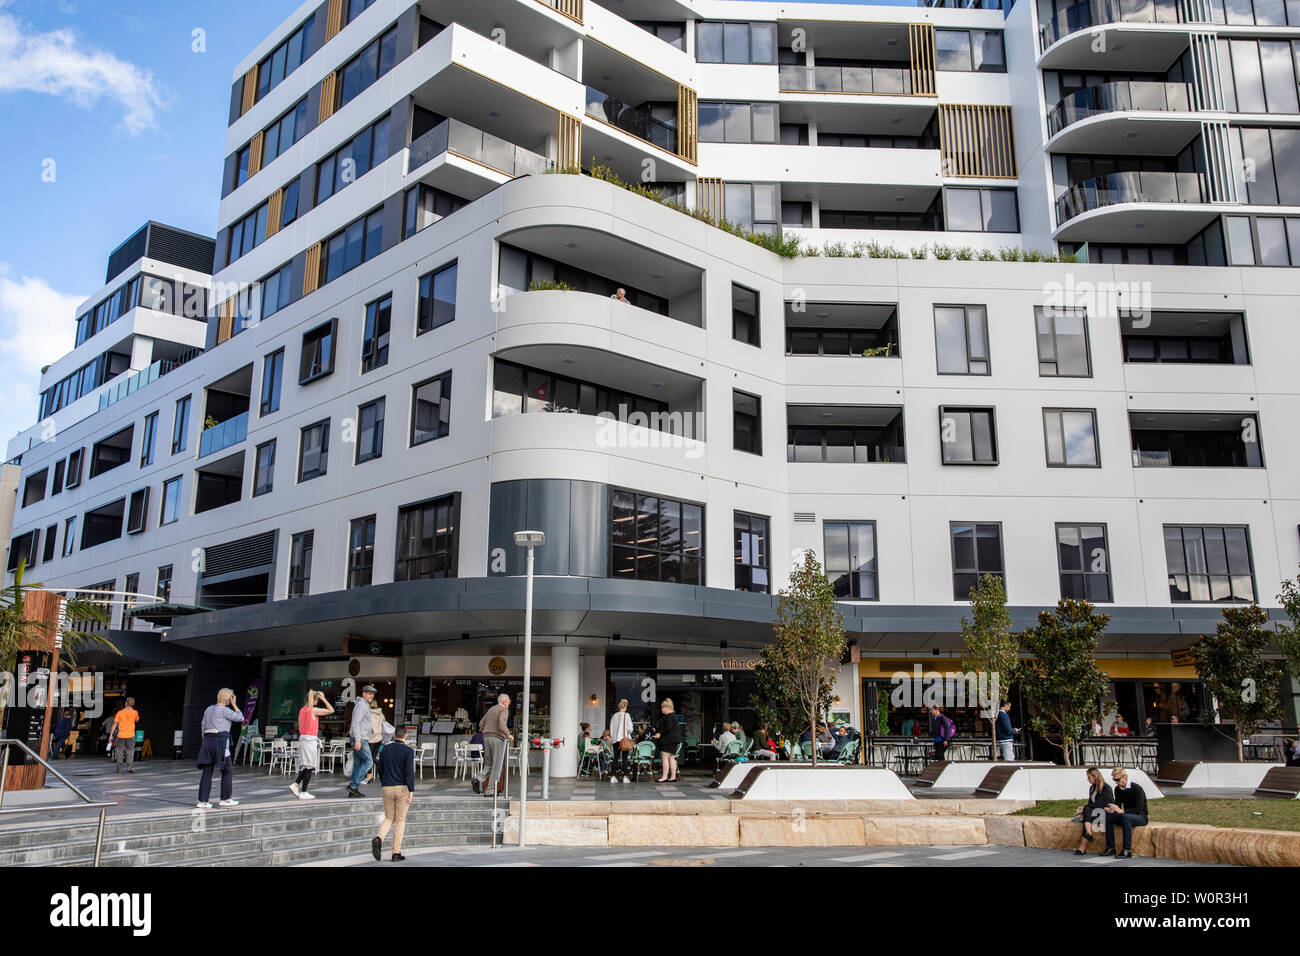 Meriton Dee Why regeneración urbana desarrollo con nuevos rascacielos de vivir en un apartamento y retail precinct, playas del norte de Sydney, Australia Foto de stock